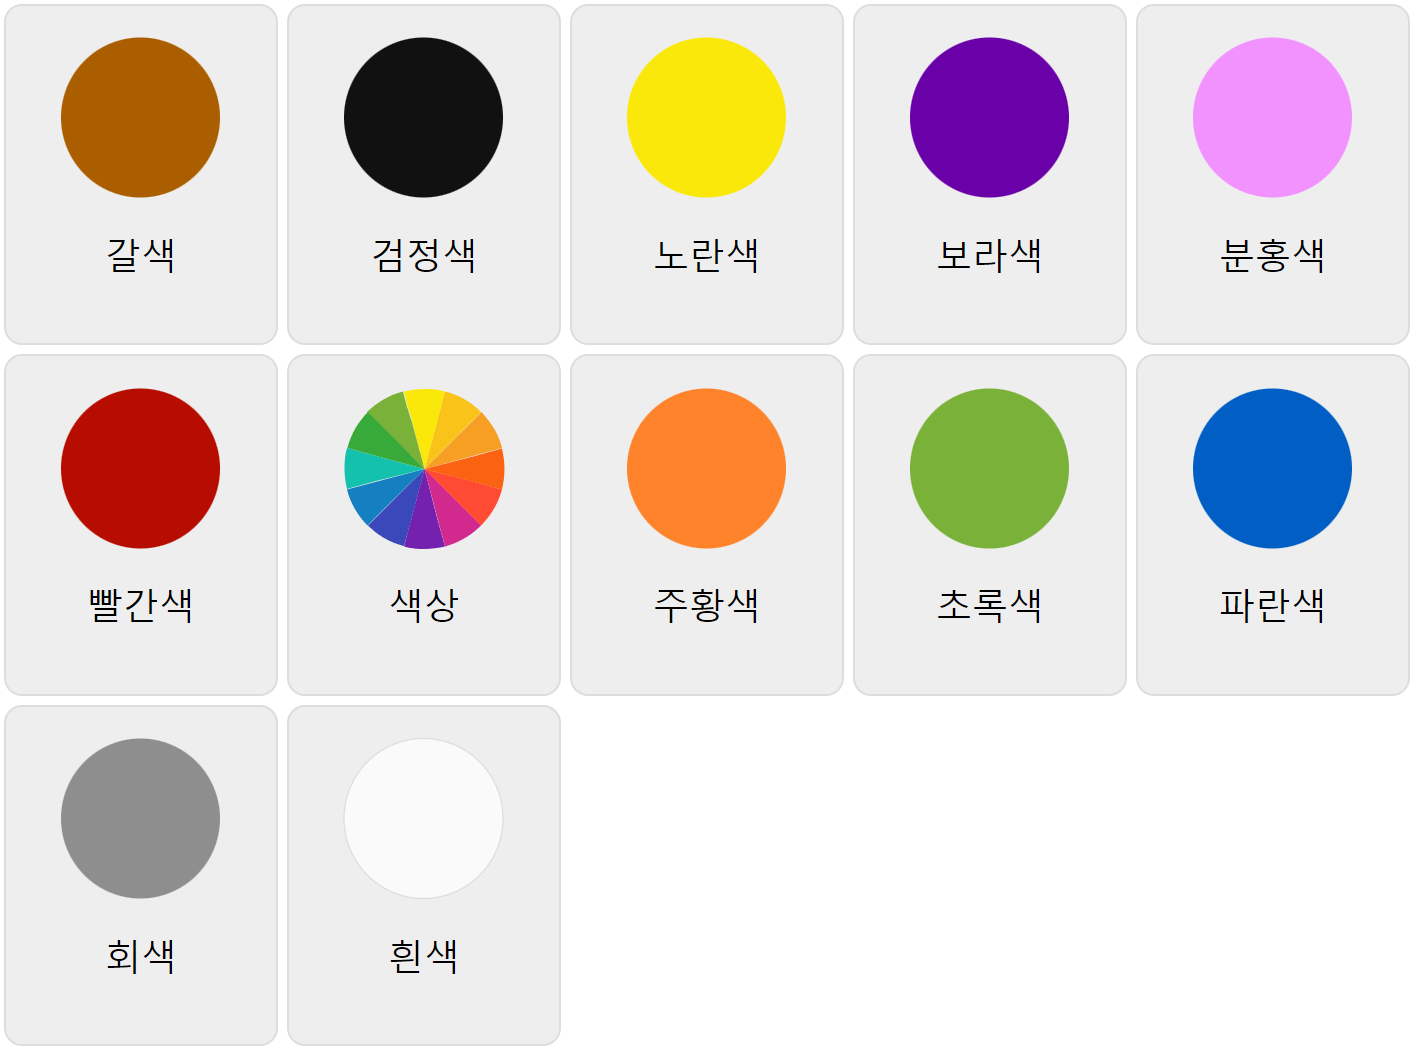 Farben auf Koreanisch